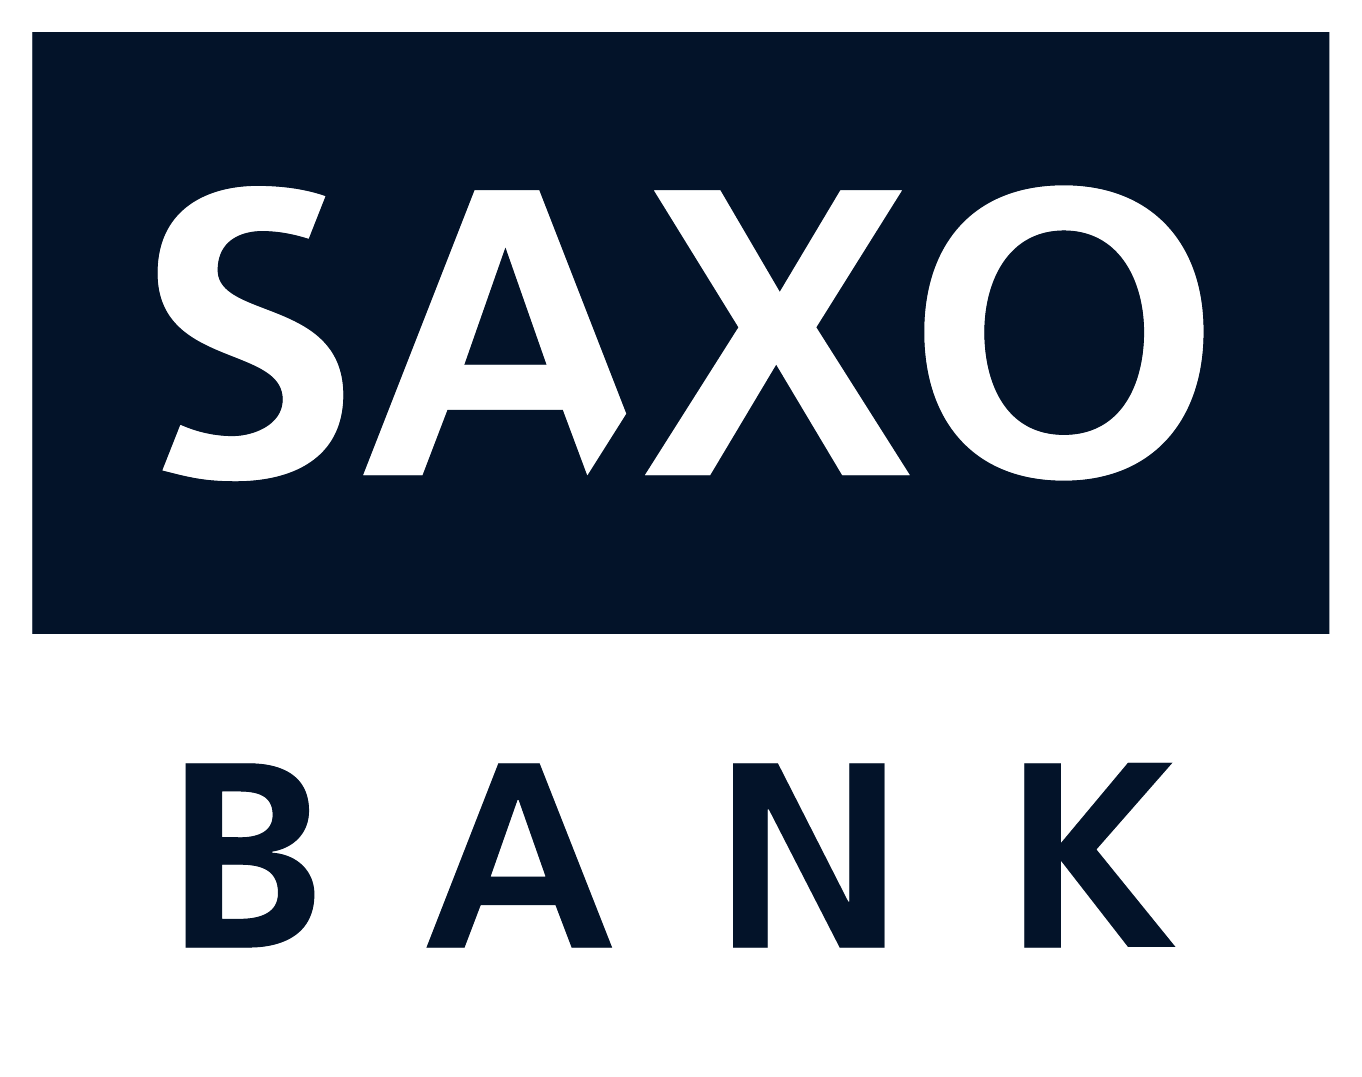 saxo bank bitcoin trading